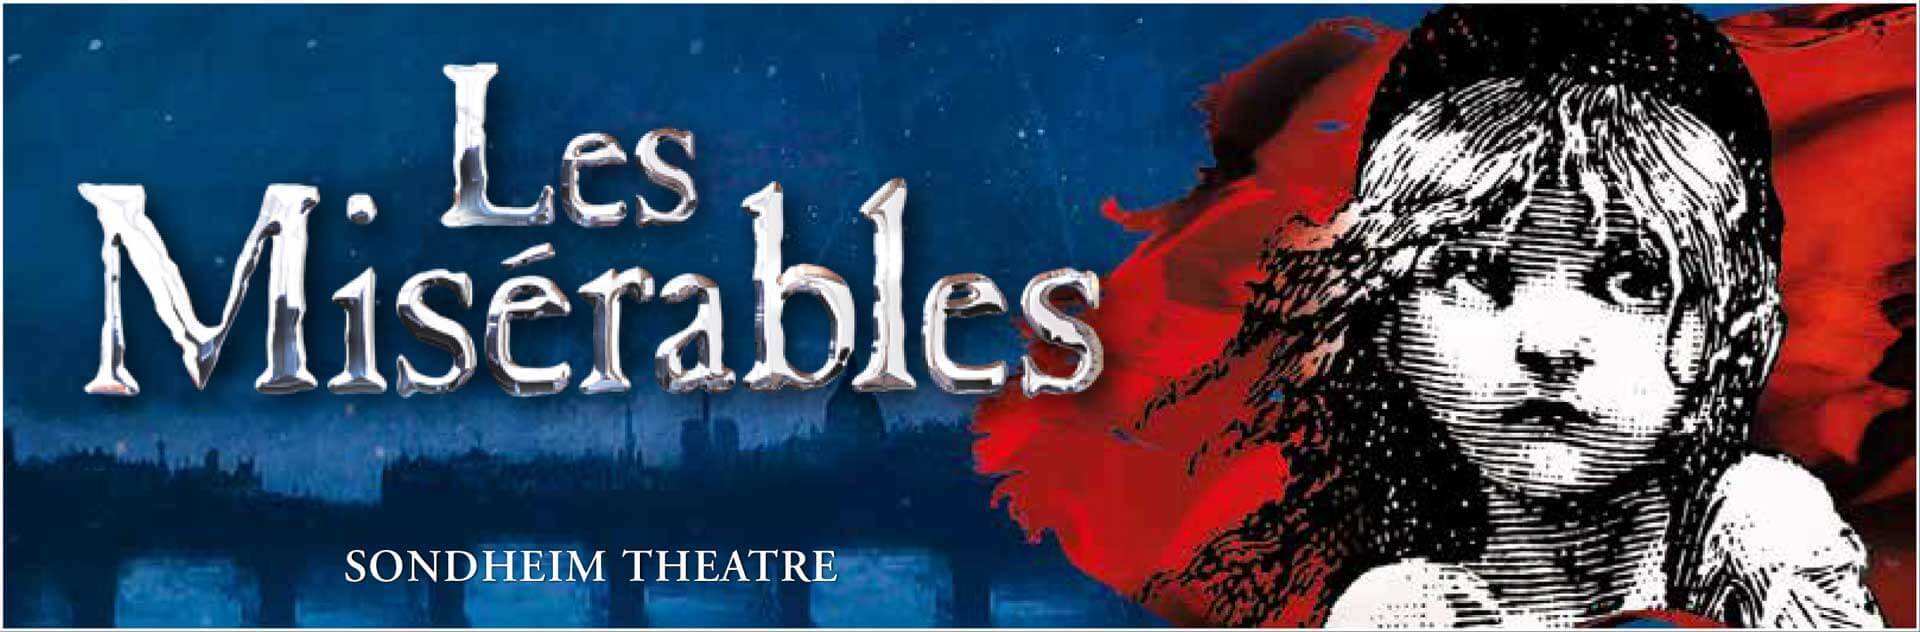 Les Misérables at the Sondheim Theatre